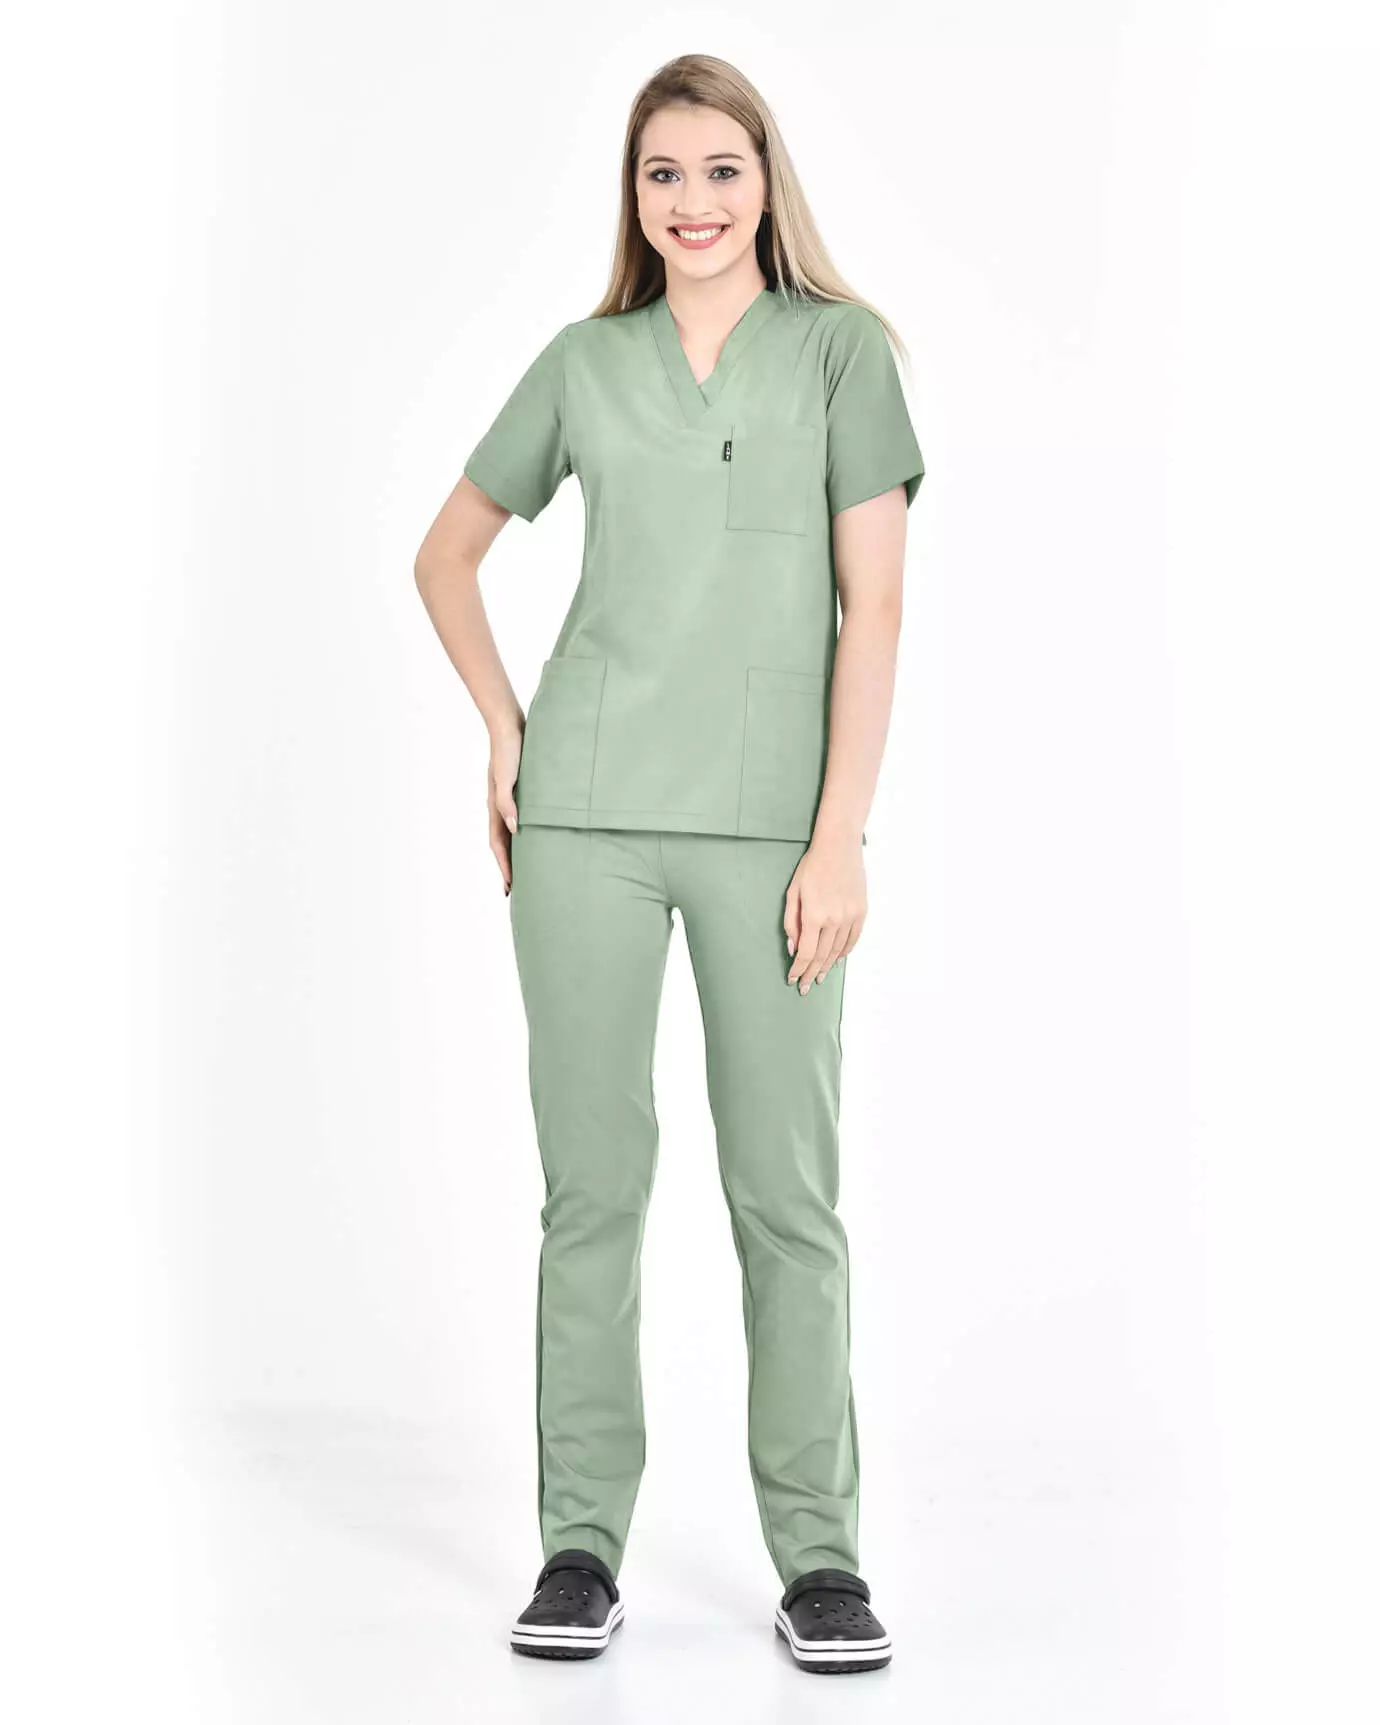 Kadın Hemşire Forması Premium Mint Yeşili Takım Takma Kol